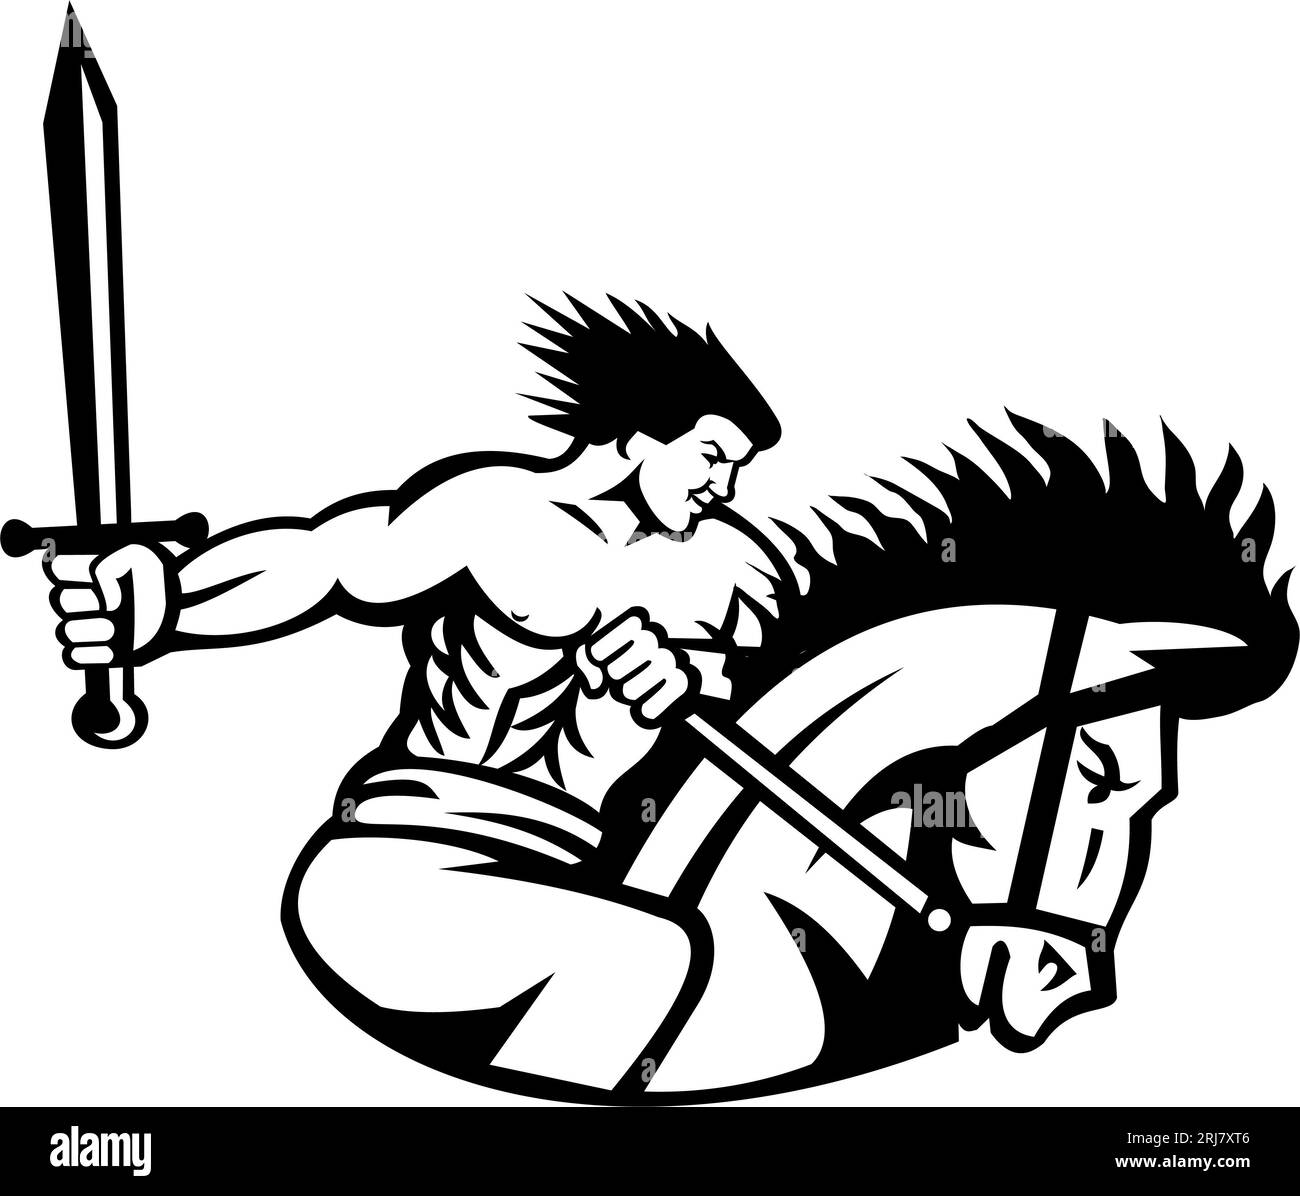 Maskottchen-Illustration von David von Sassoun oder Sasun, einem armenischen Helden, der auf einem Pferd mit Schwert reitet, das angreift, gesehen von einer Seite aus isoliertem Backgroun Stockfoto